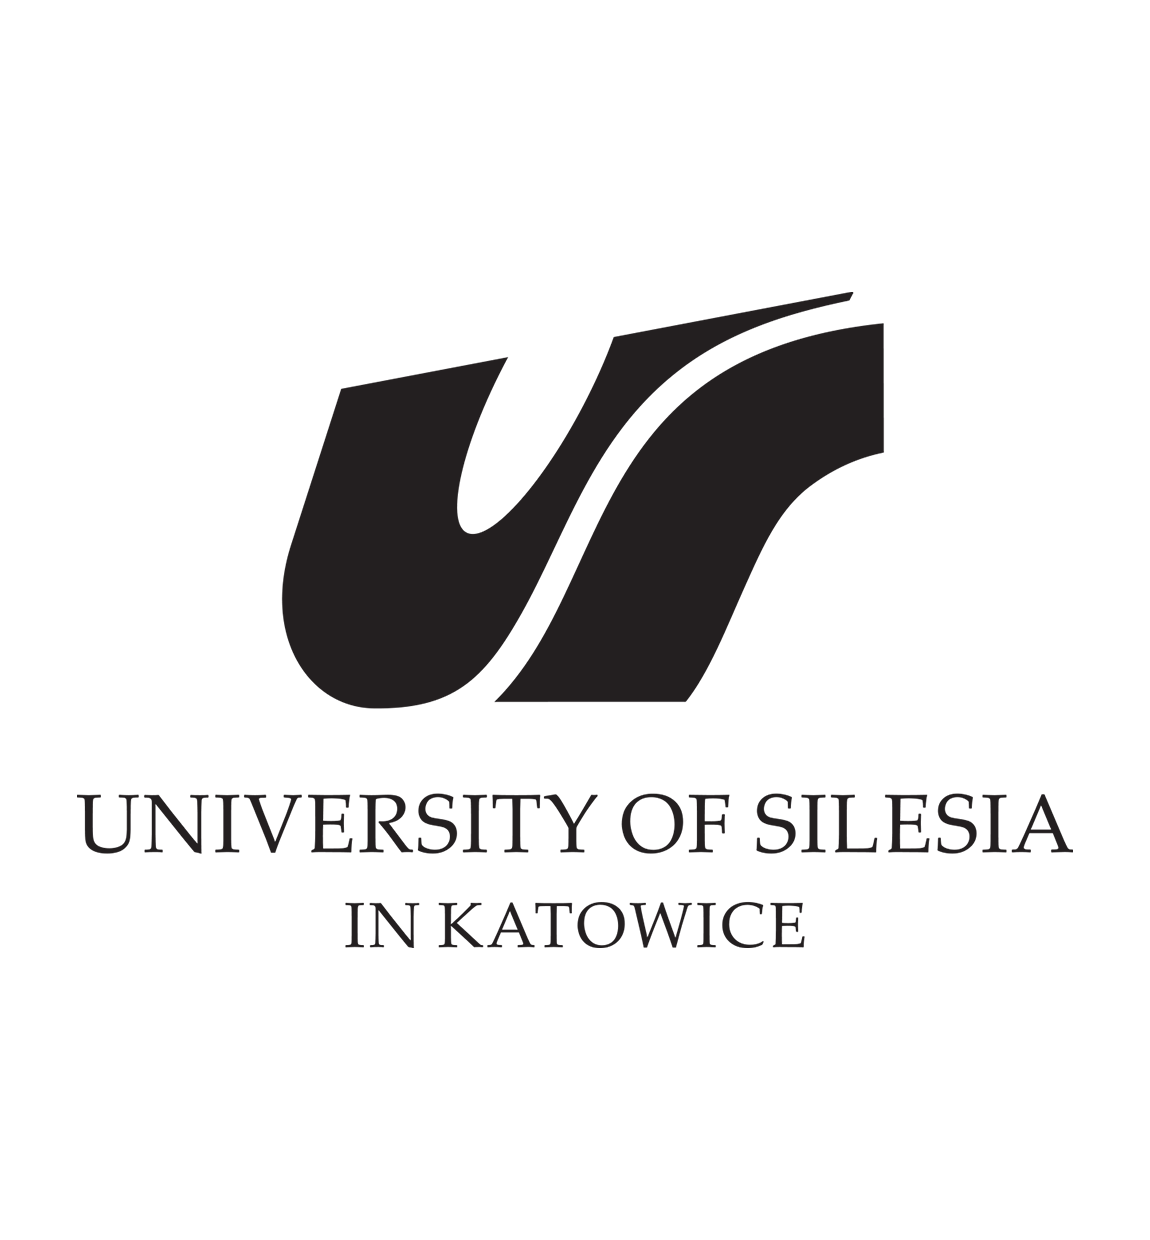 logo_silesia